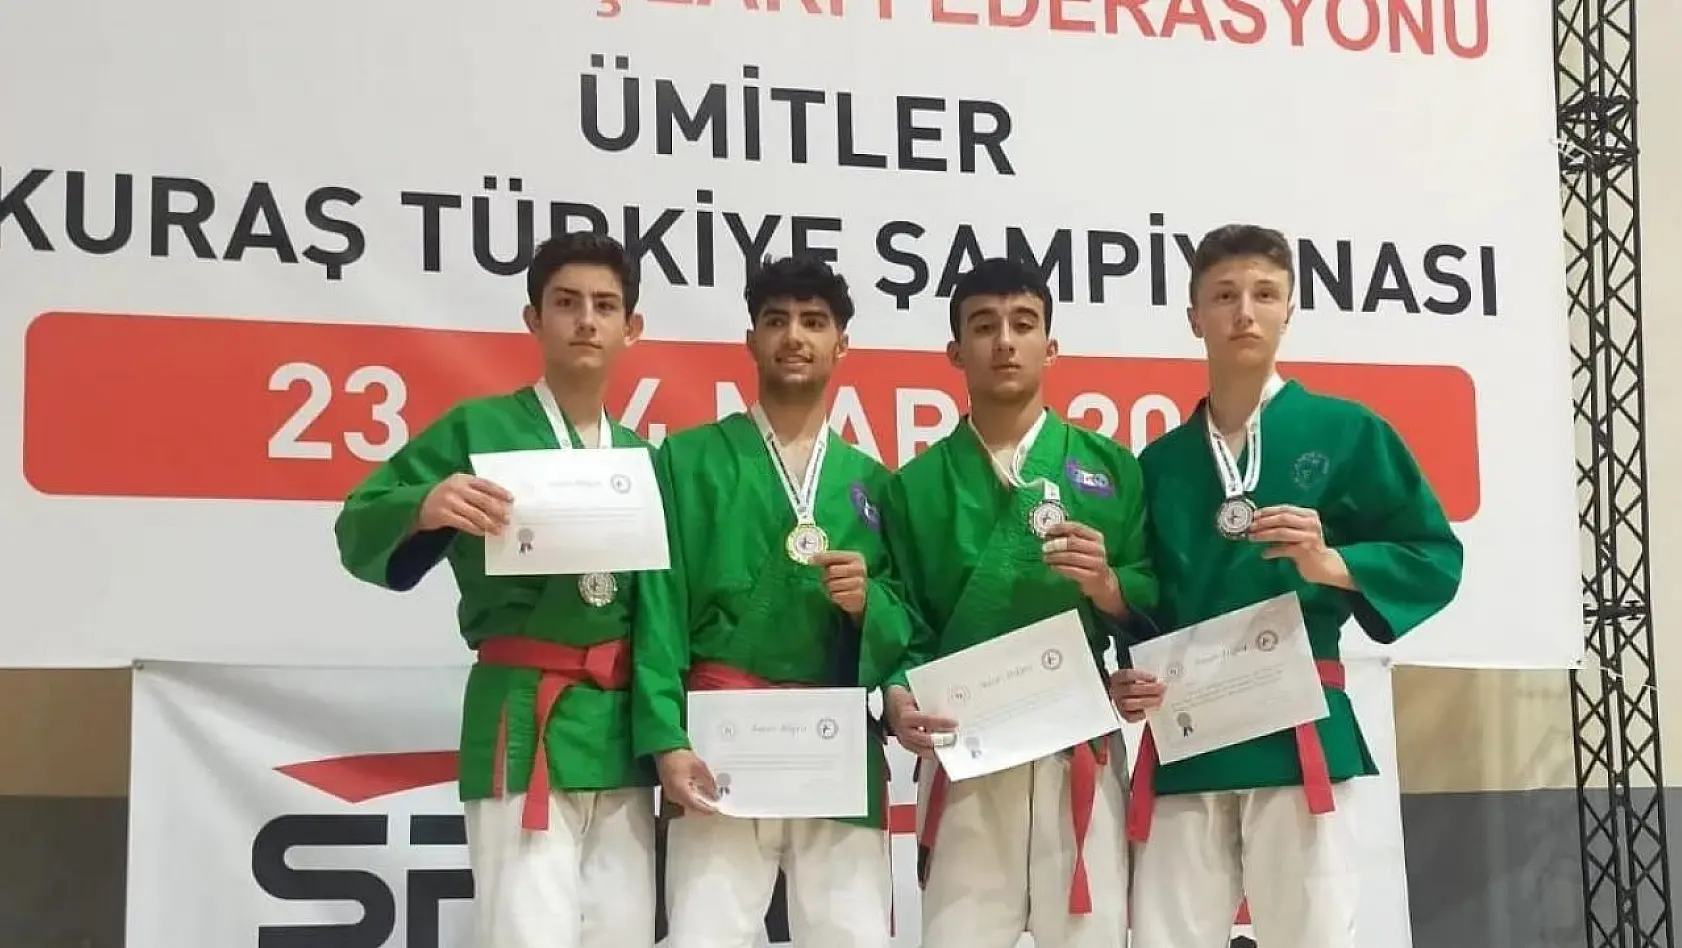 Kütahyalı sporculardan Ümitler Kuraş Türkiye Şampiyonası'nda zafer